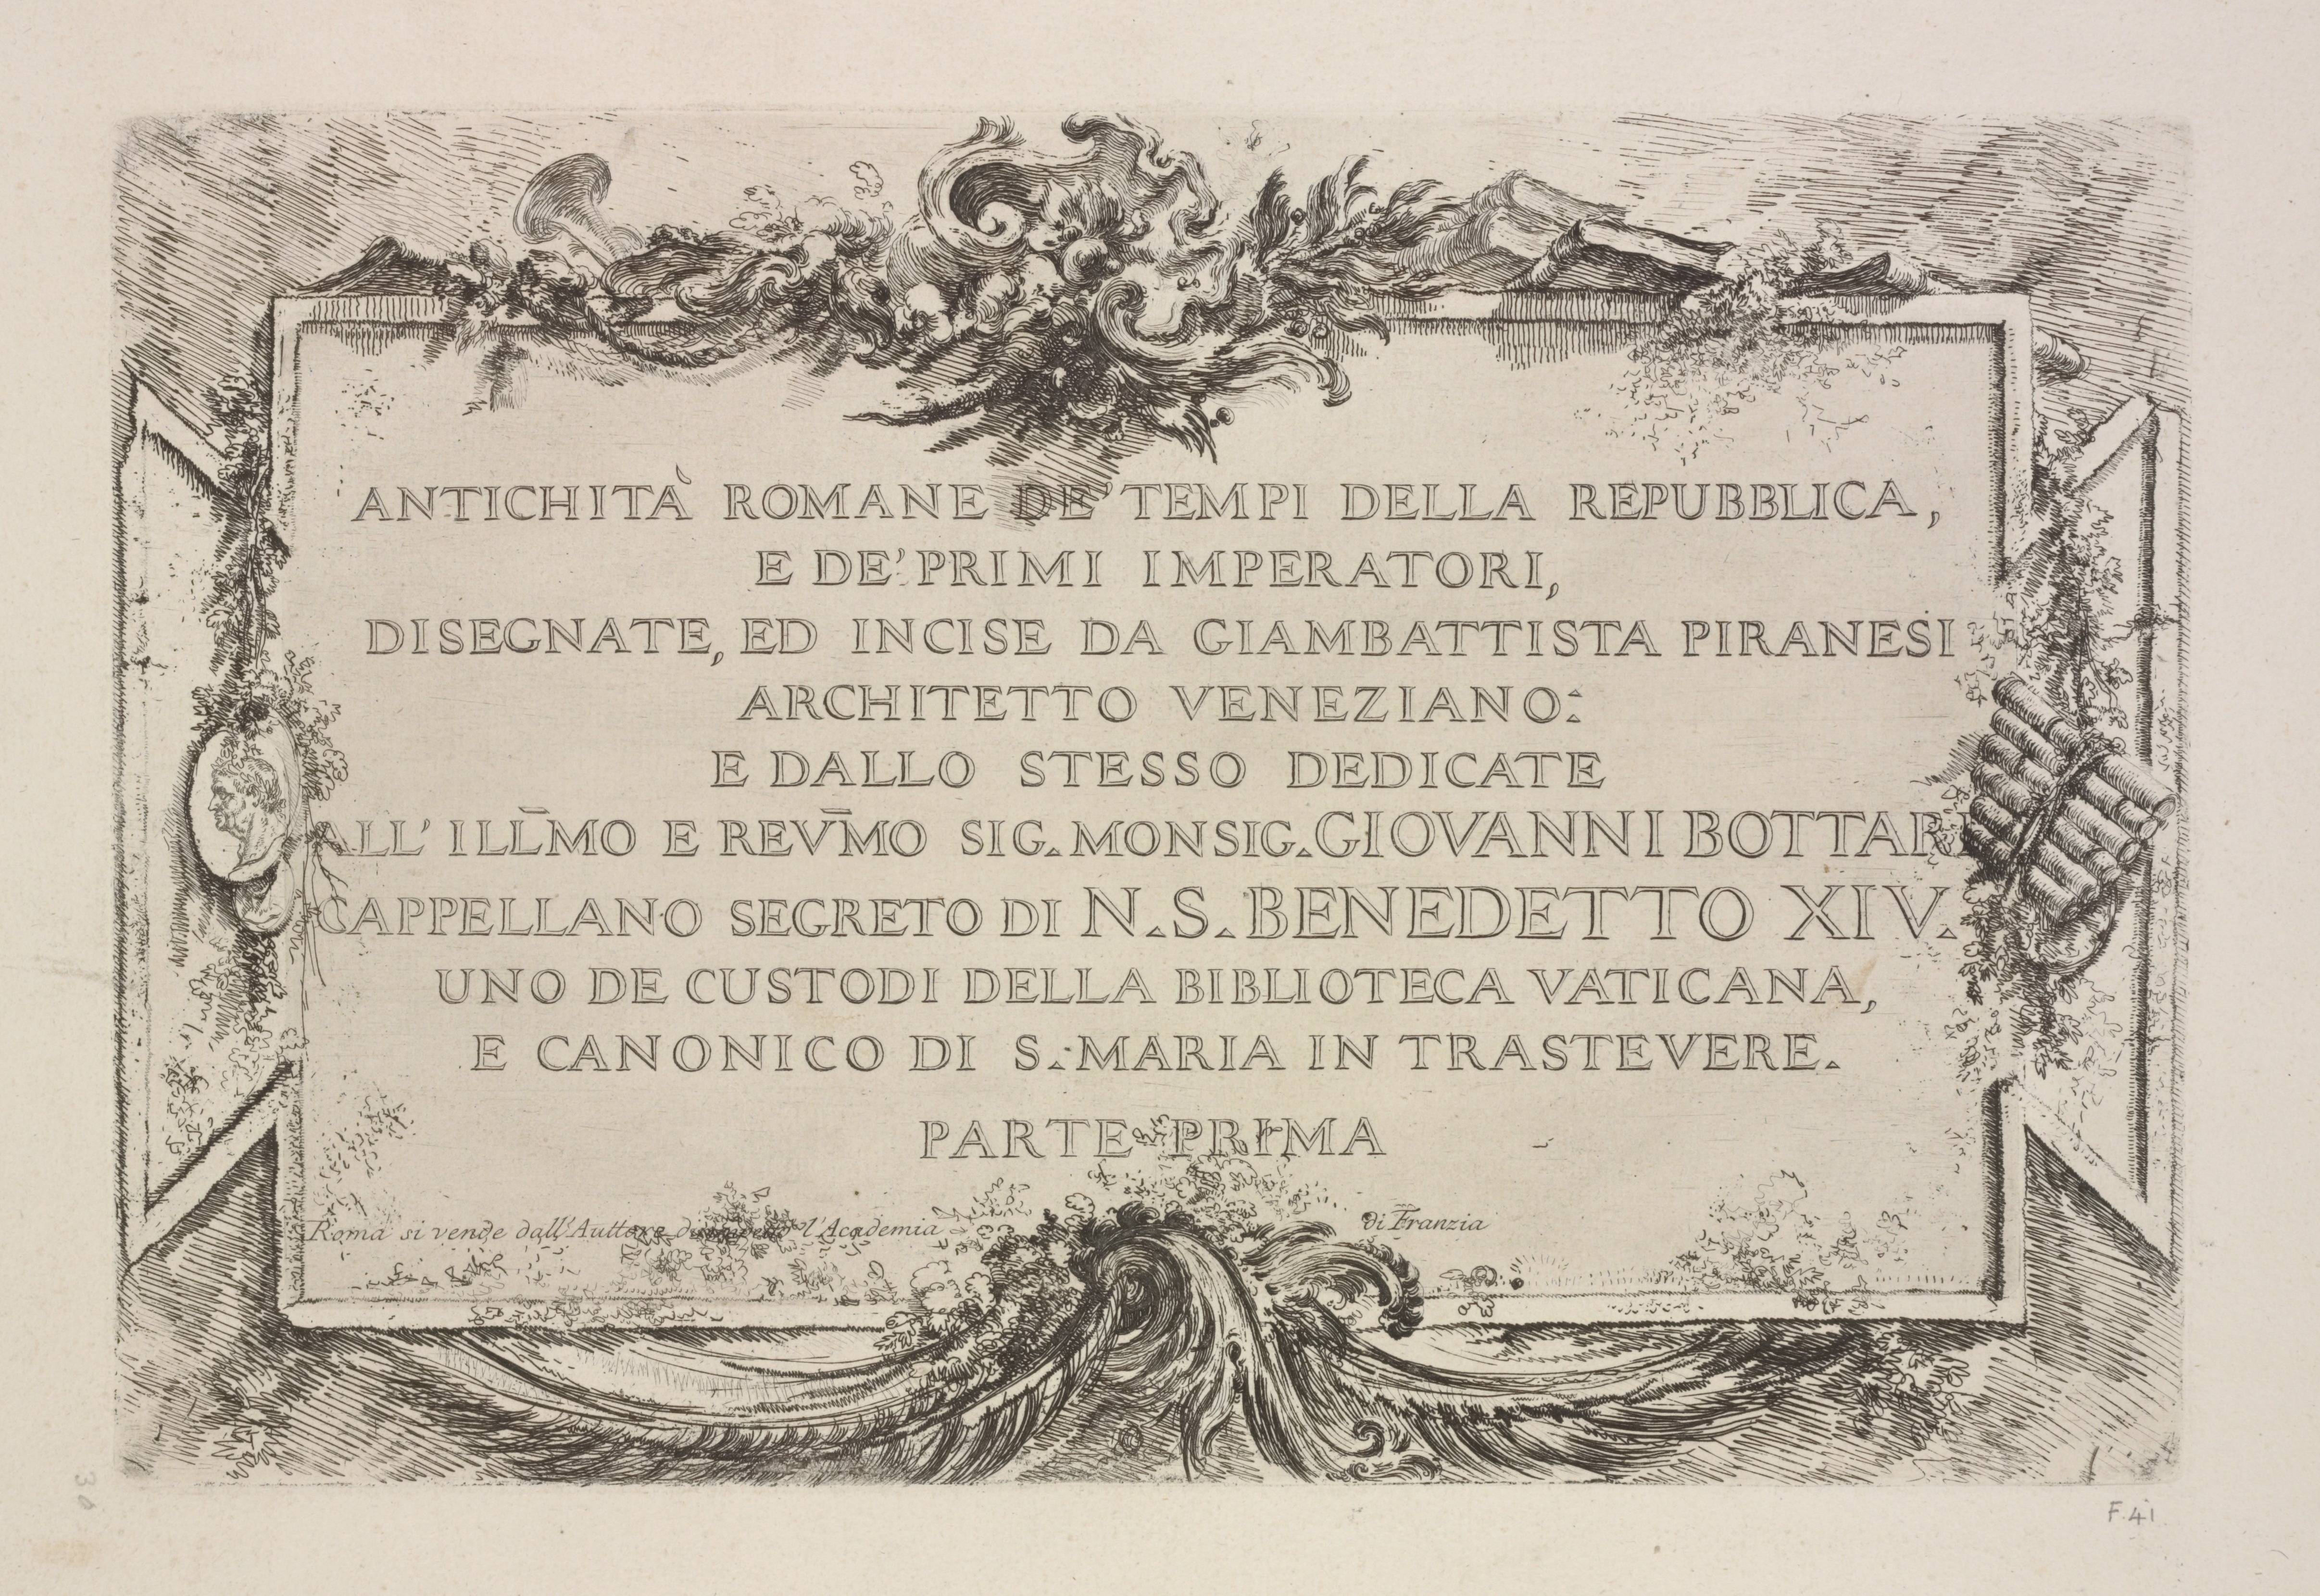 Giovanni Battista Piranesi. Alcune Vedute di Archi Trionfali ed altri monumenti. 1748